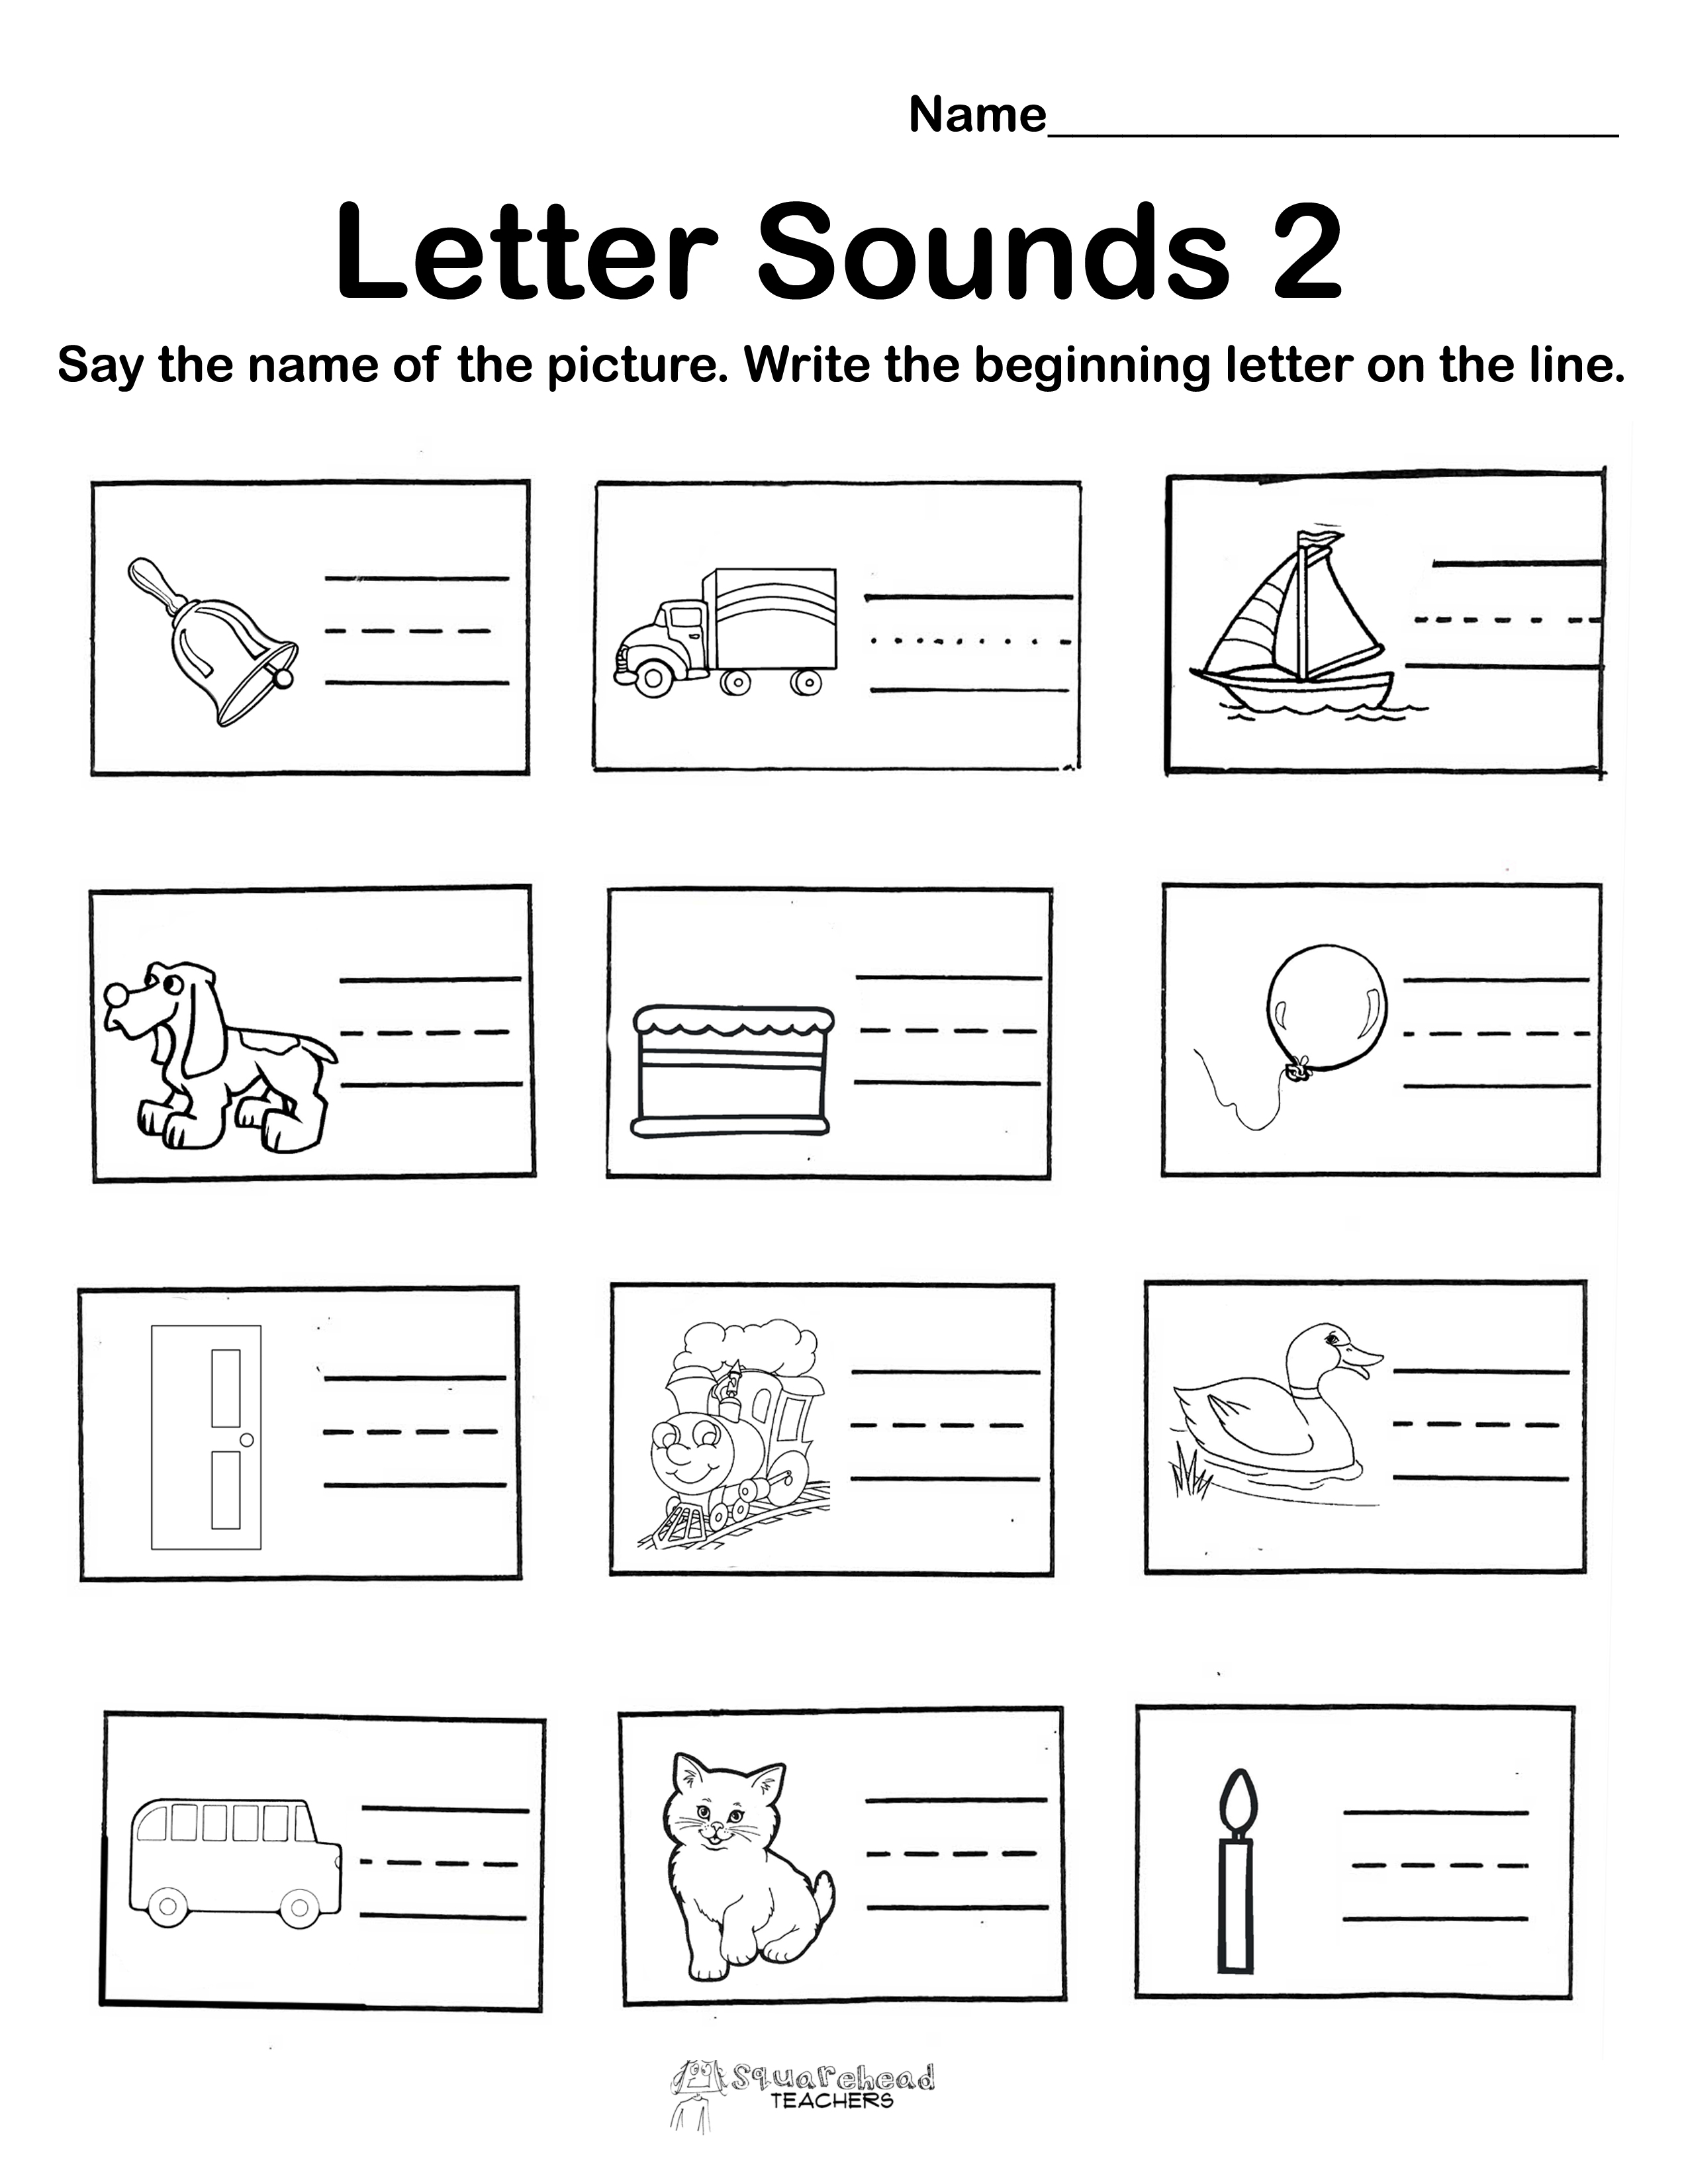 Kindergarten Letter Sounds Worksheets Image